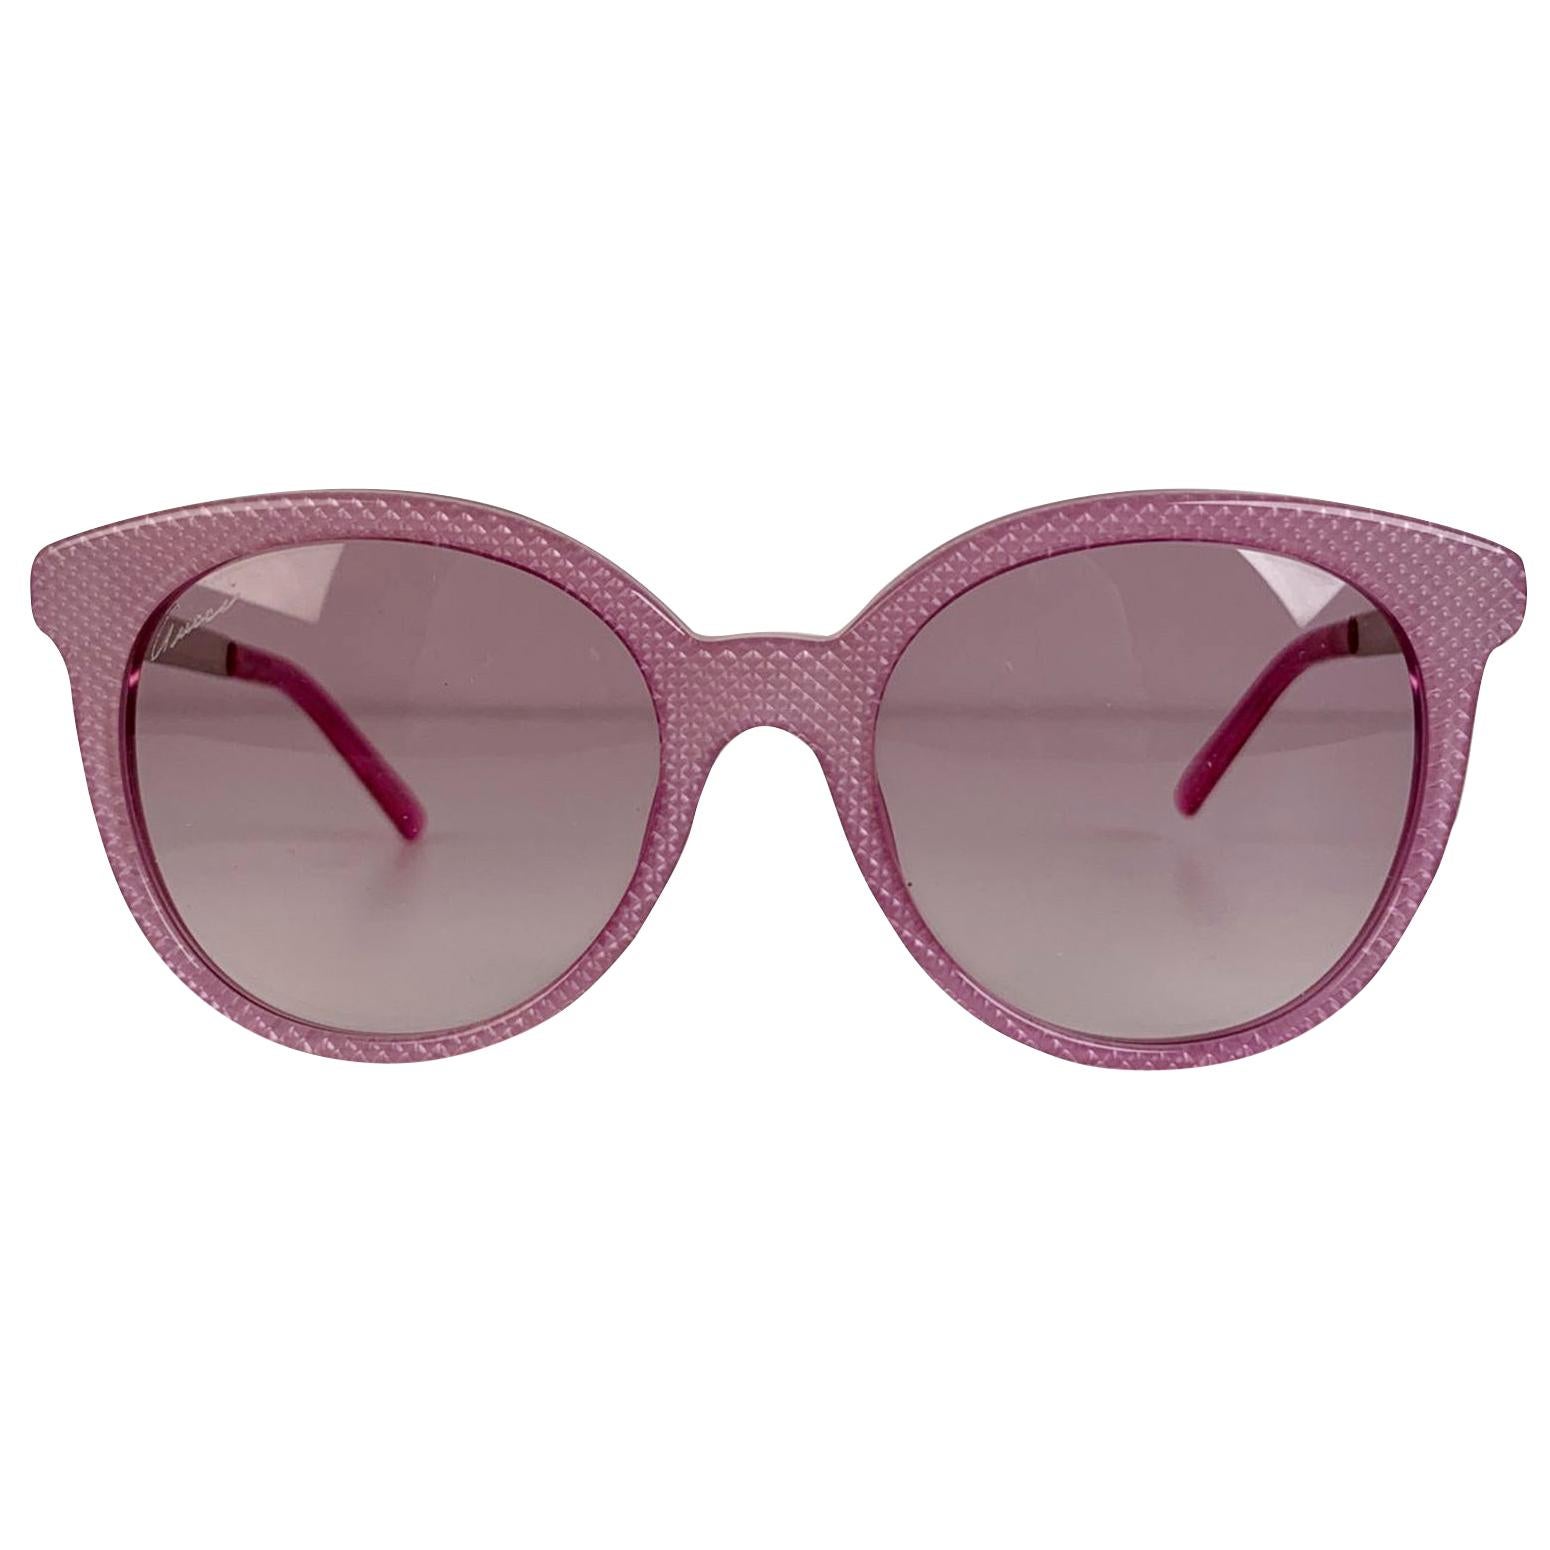 gucci pink acetate sunglasses